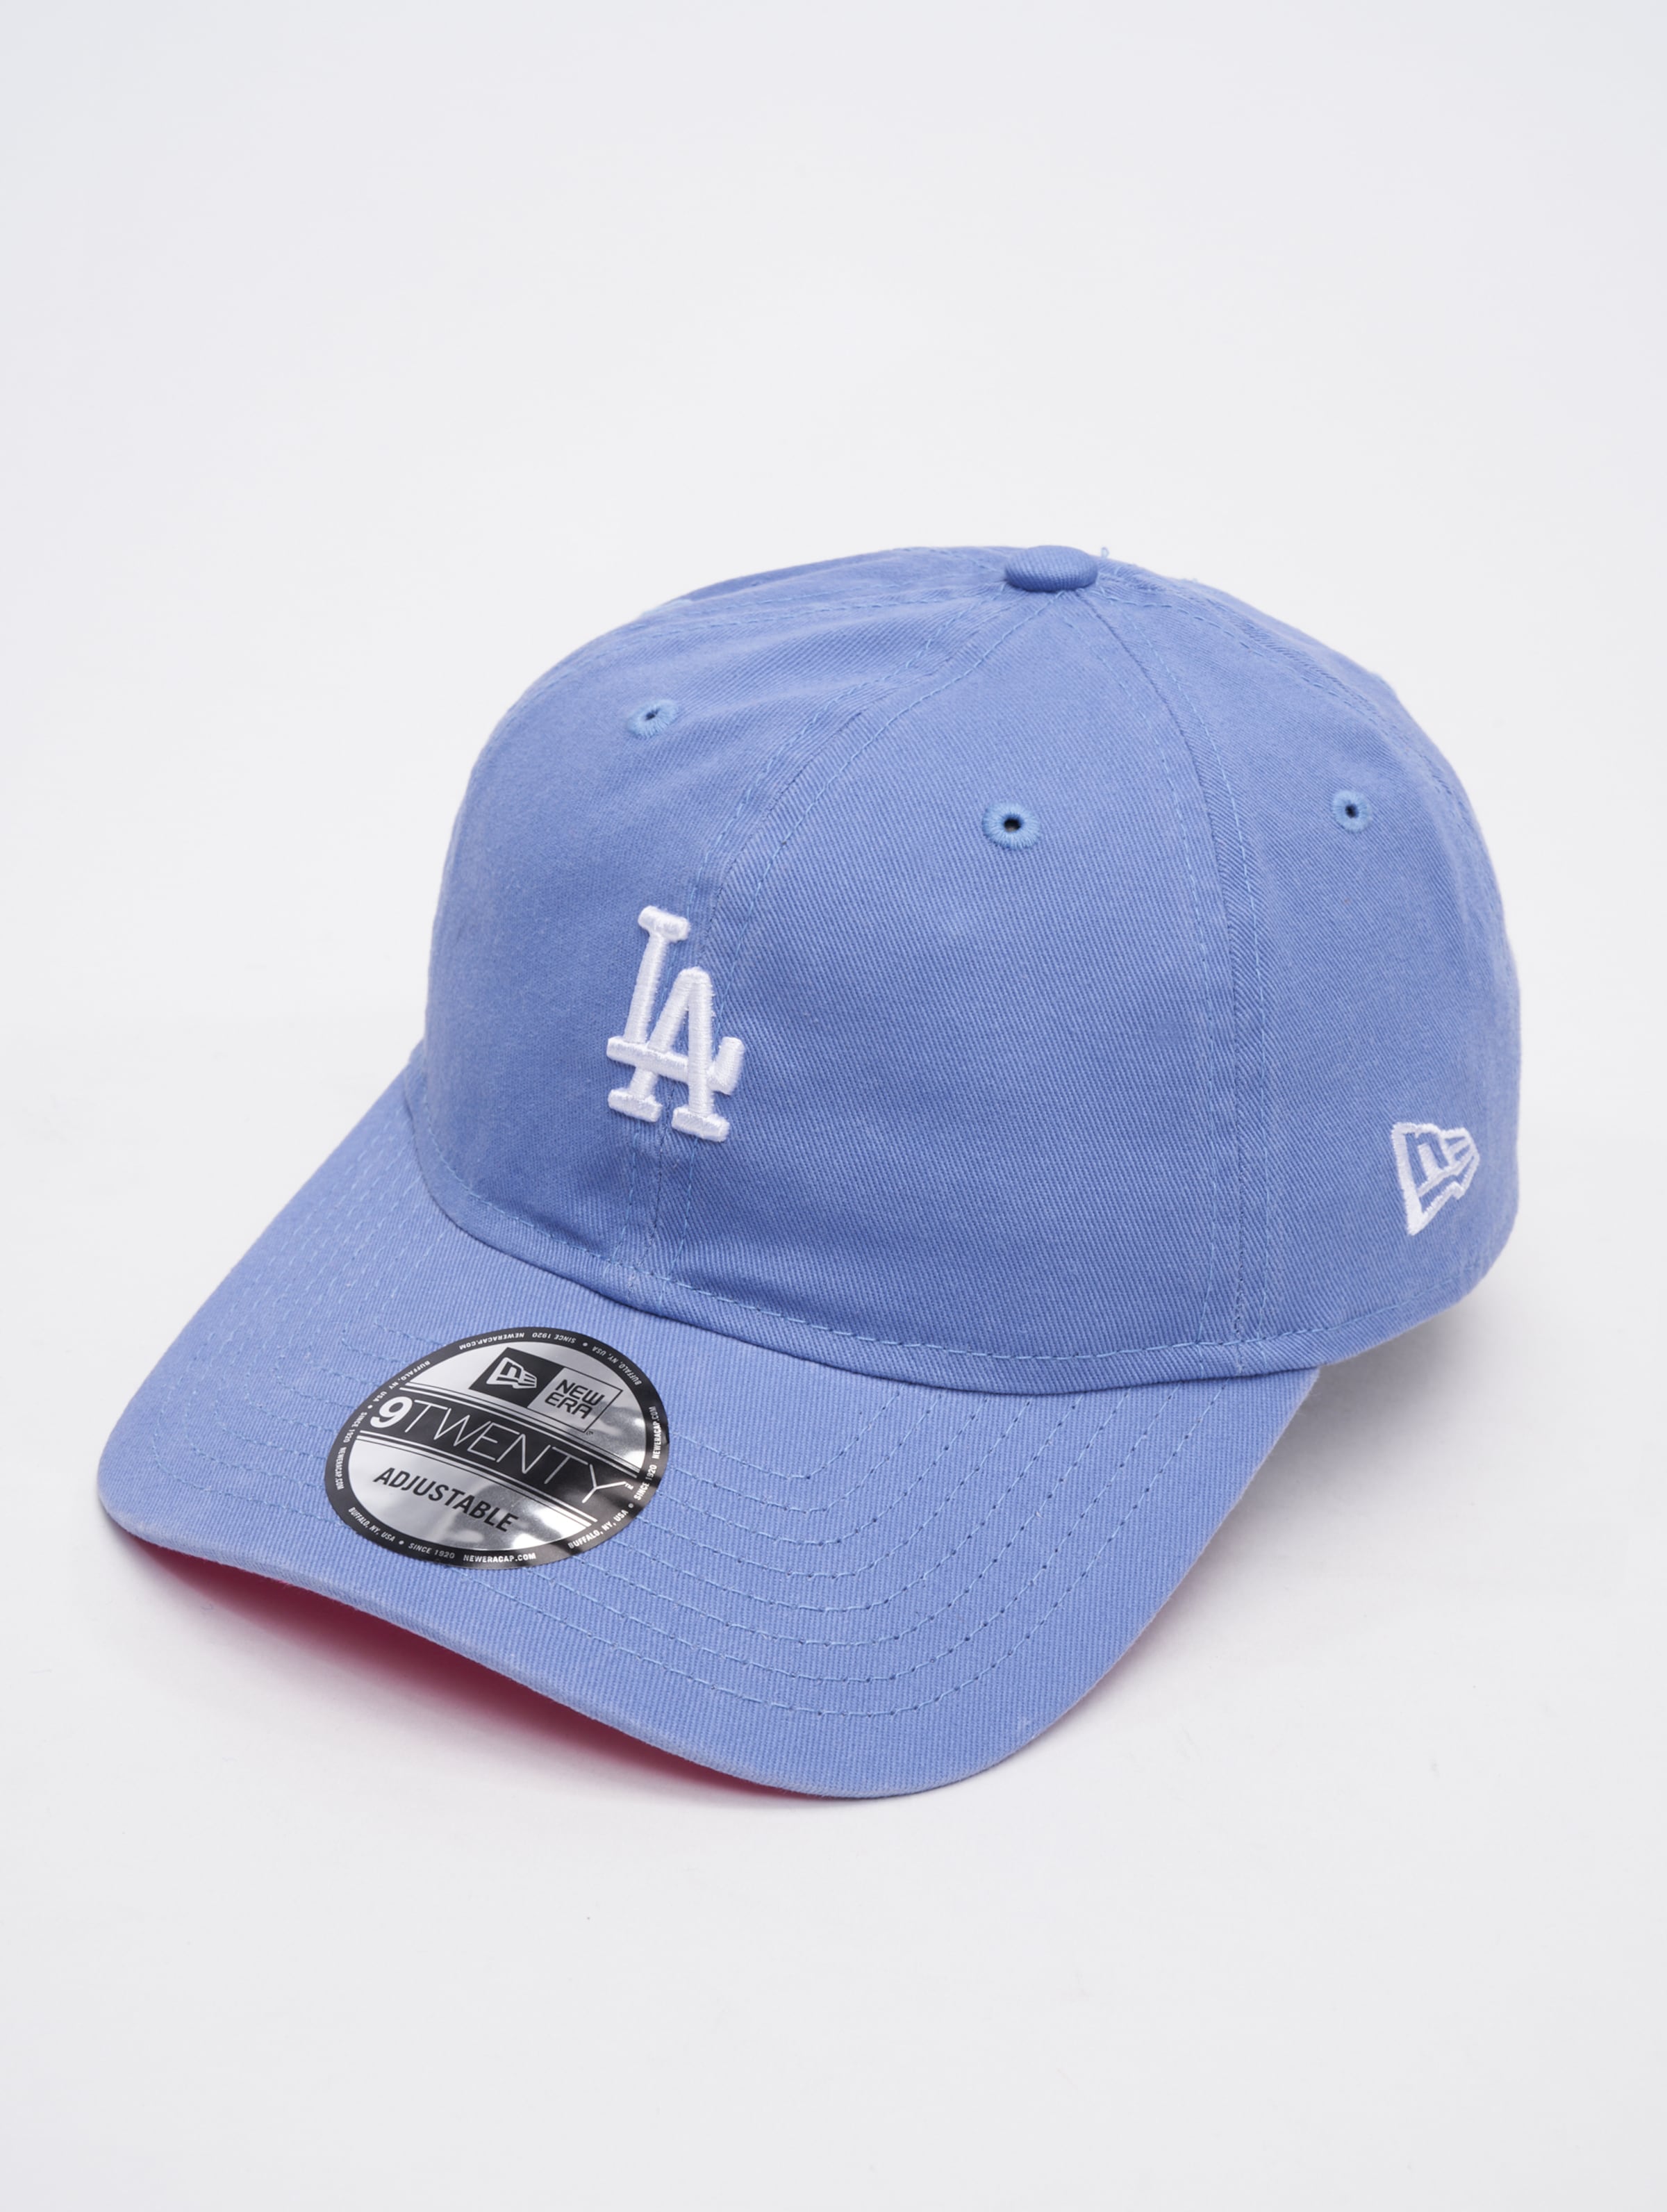 New Era Style Activist 9Twenty LA Dodgers Cap Frauen,Männer,Unisex op kleur blauw, Maat ADJUSTABLE